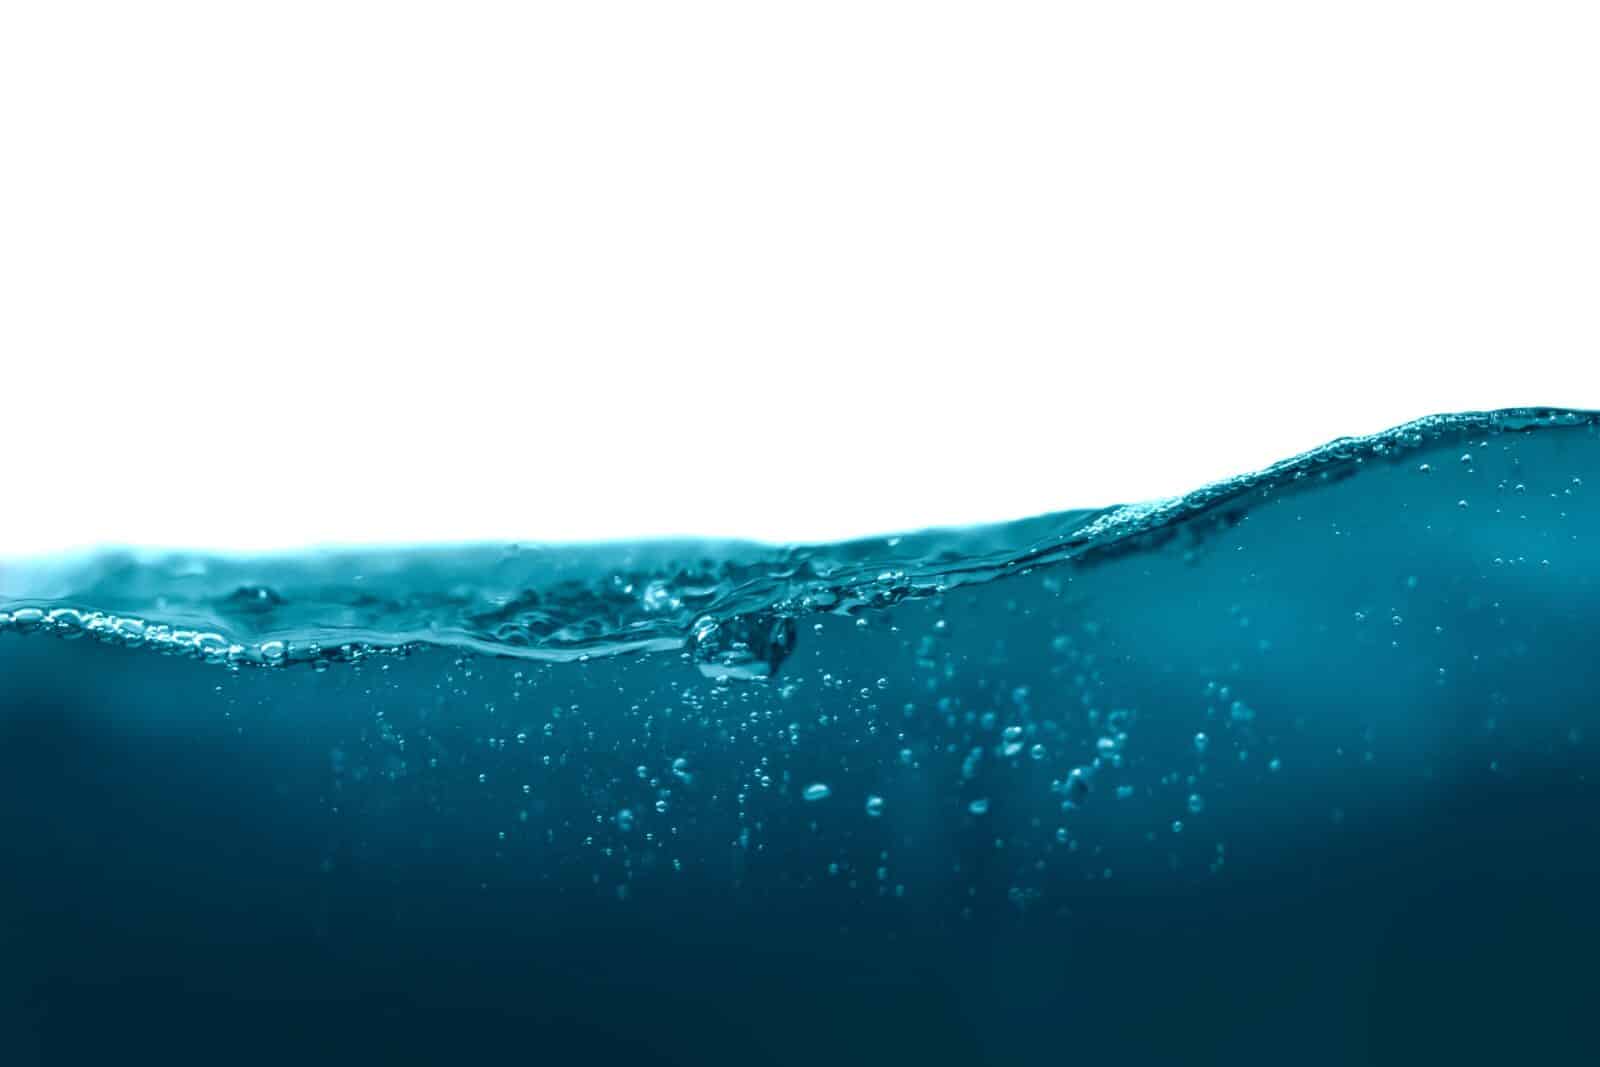 ほぼ無尽蔵な淡水を供給できる画期的なシステムは、海上の水蒸気を取り入れる